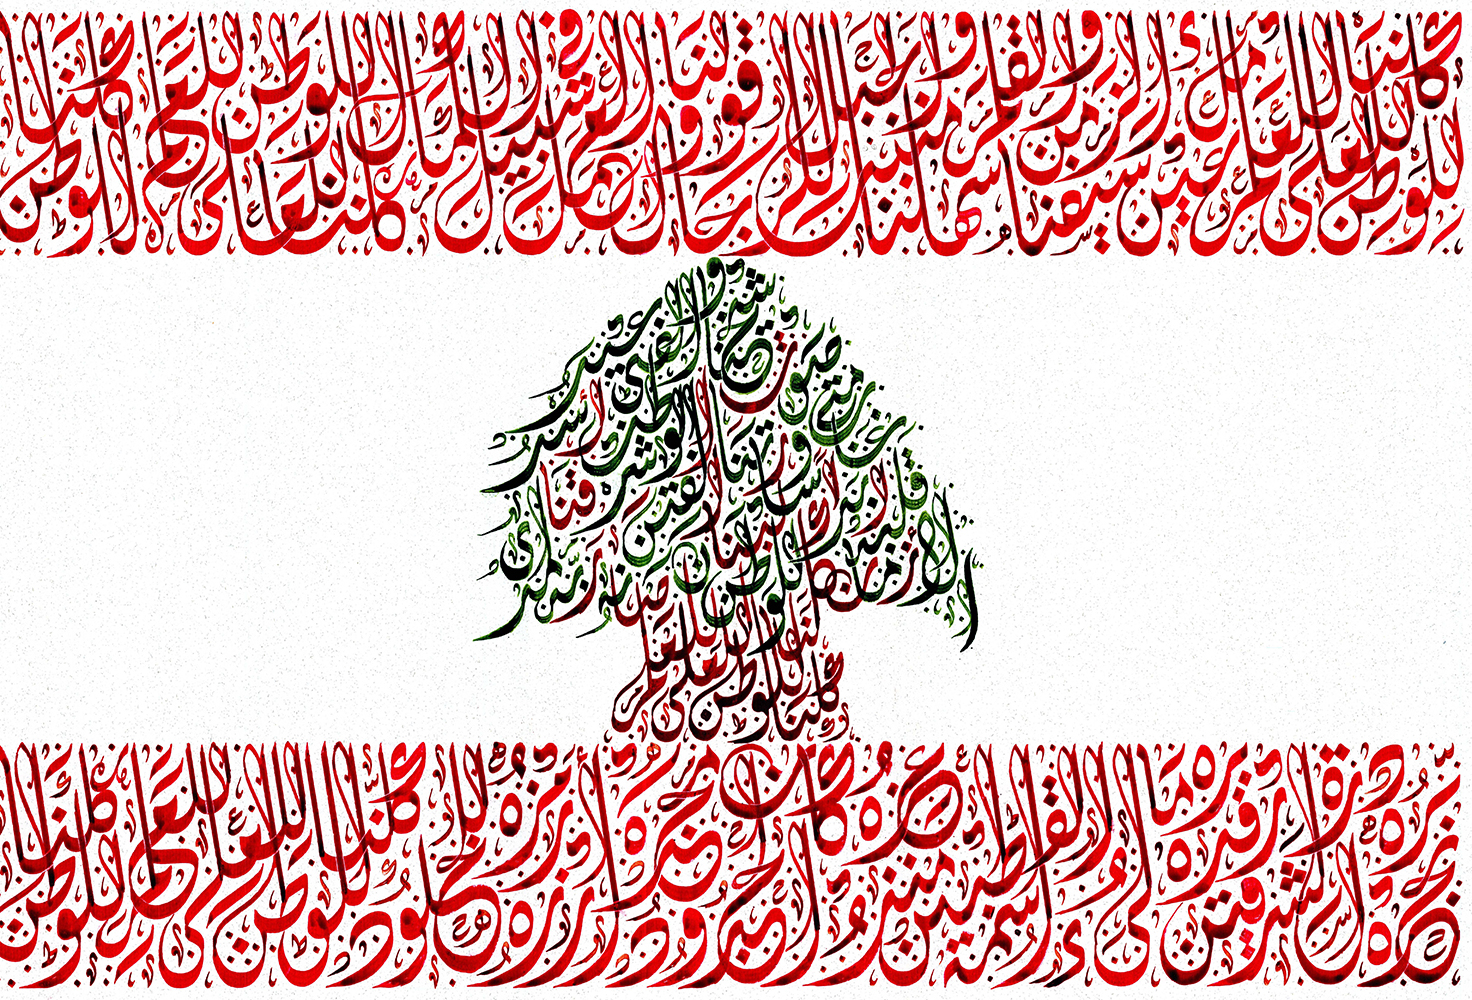 Kollona Lel Watan – The Lebanese Flag